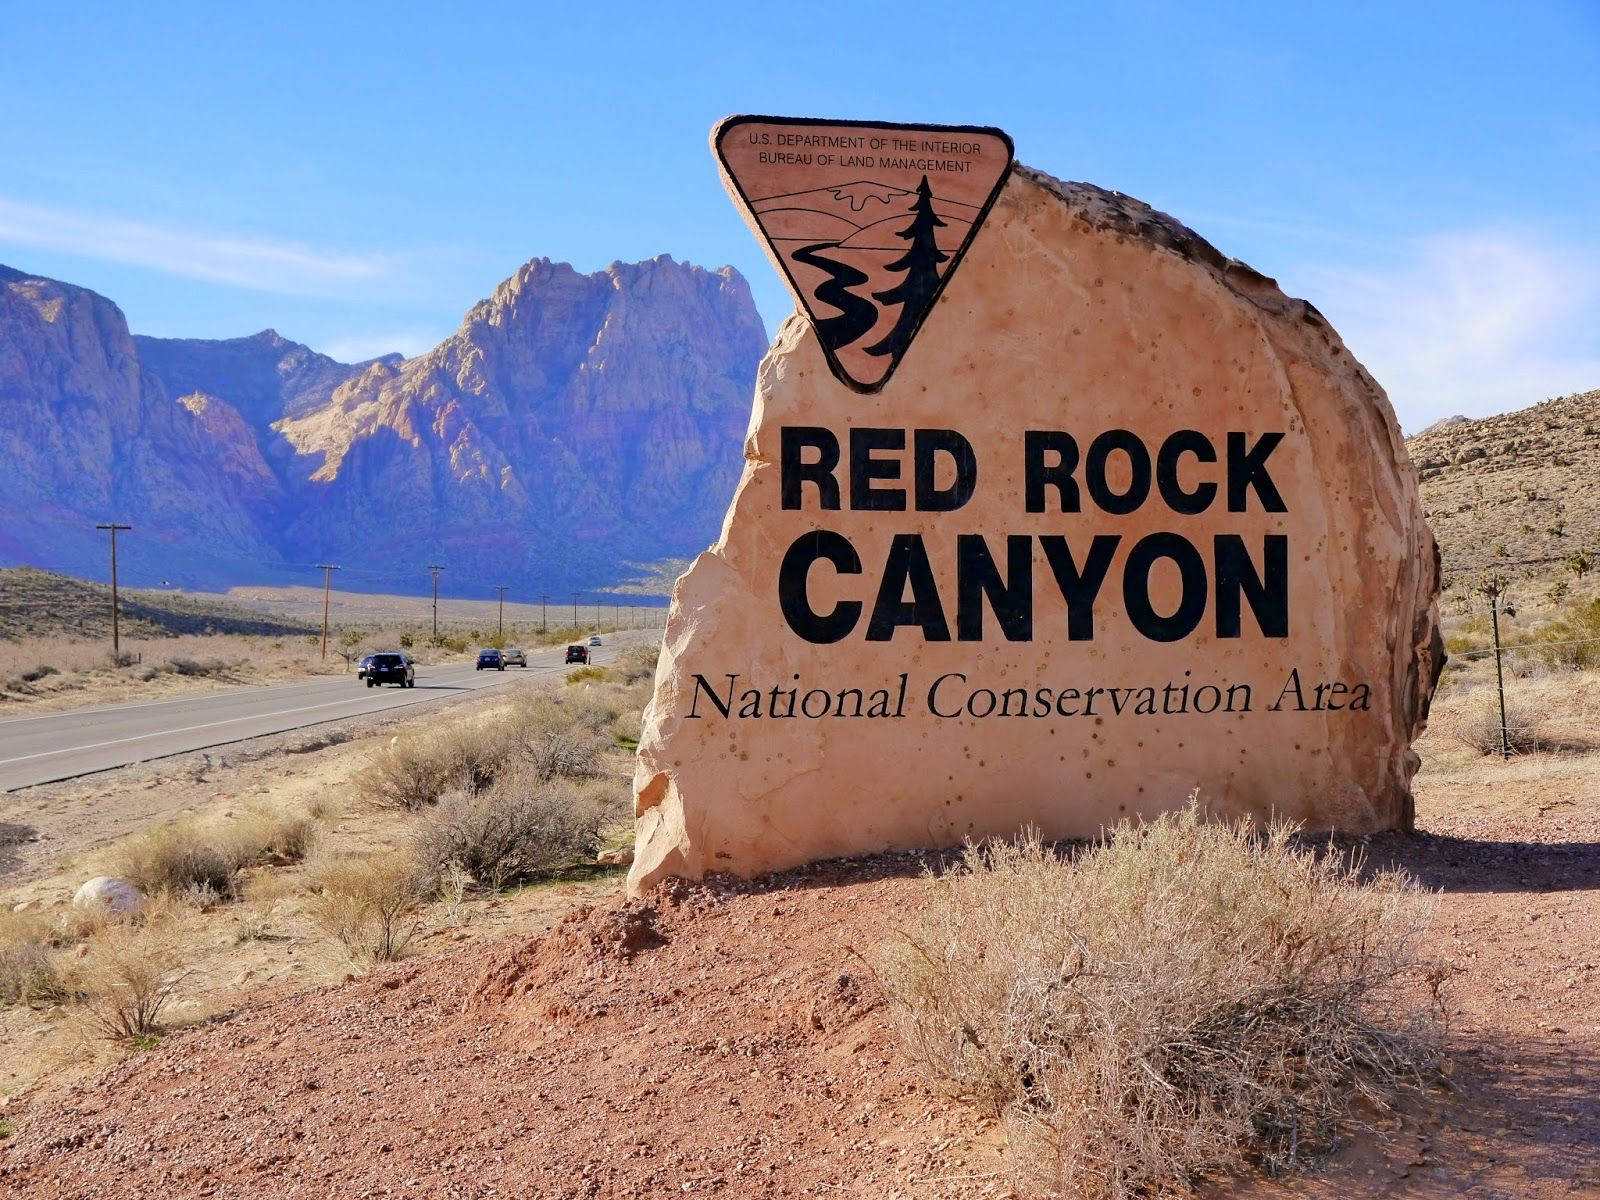 Áreade Conservación Nacional Red Rock Canyon Fondo de pantalla